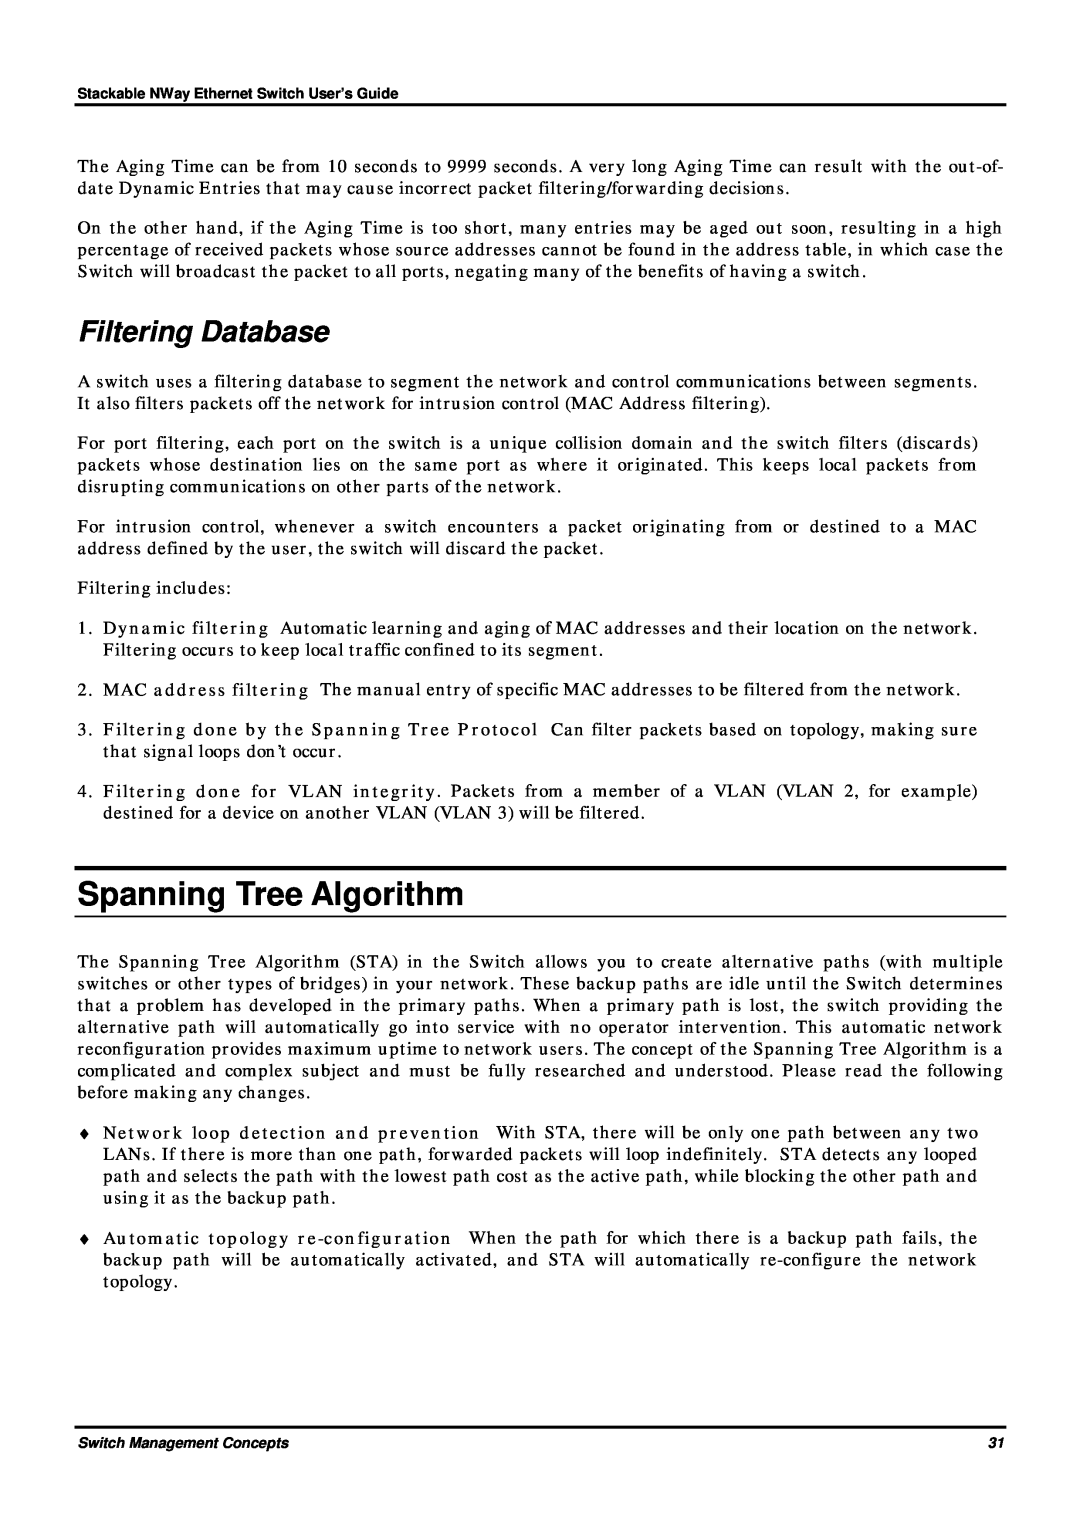 D-Link DES-3624 manual Spanning Tree Algorithm, Filtering Database 